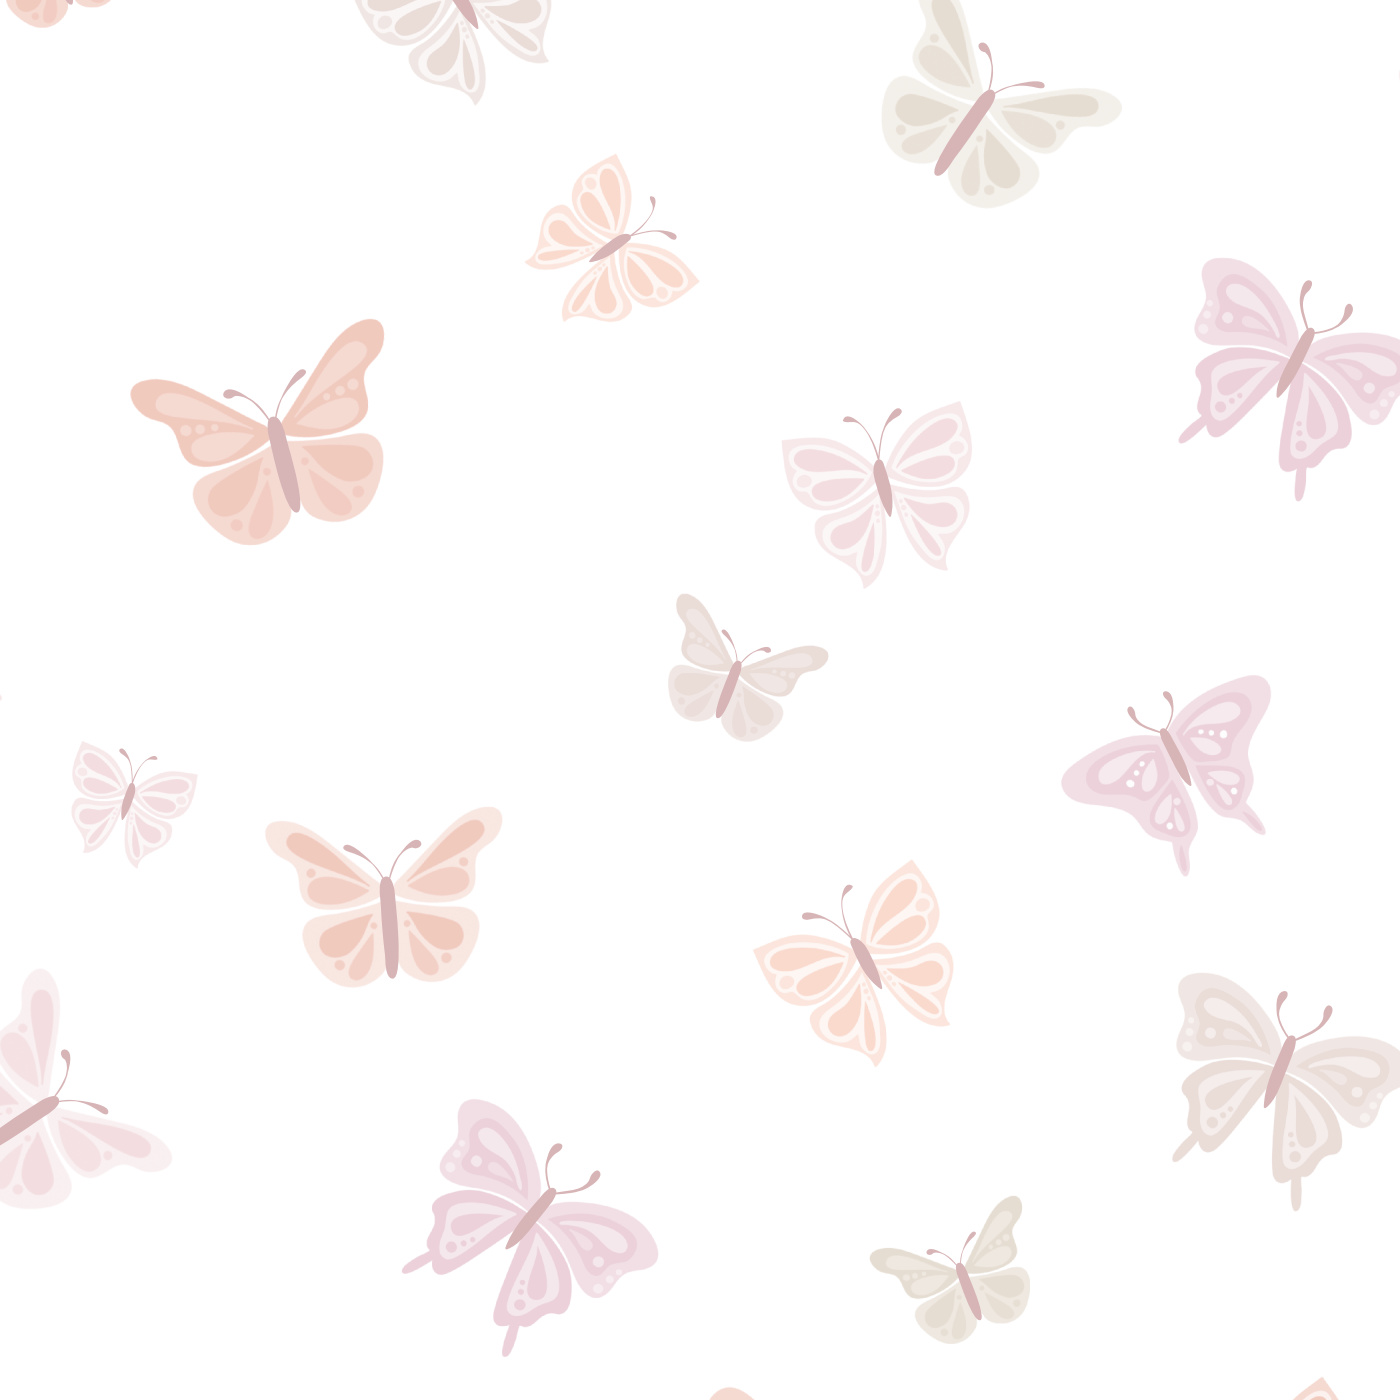 Fluttering Butterflies Wallpaper